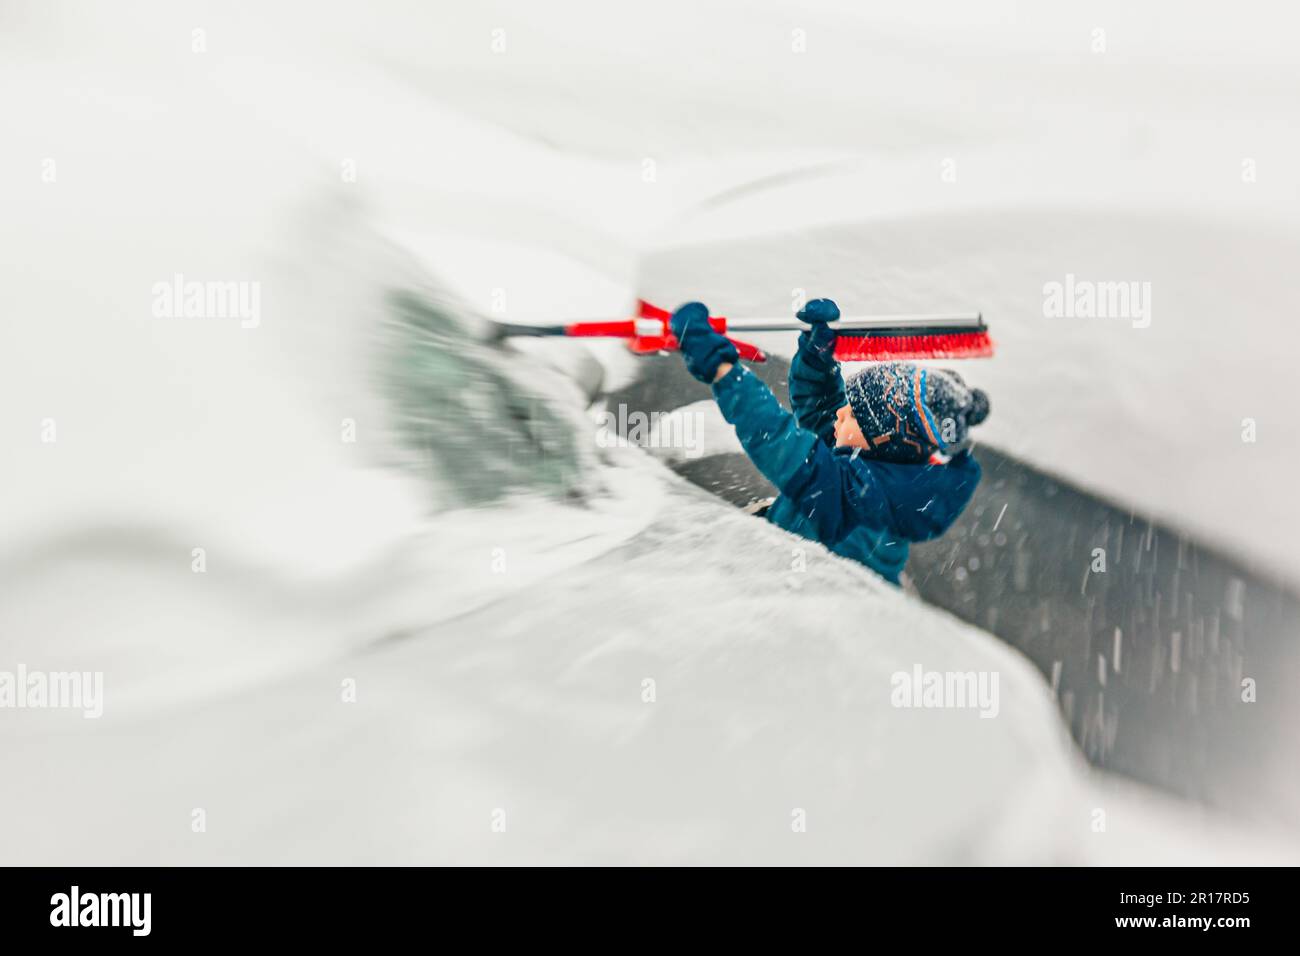 Hilfreicher Junge, der bei einem Schneesturm den Schnee räumt Stockfoto